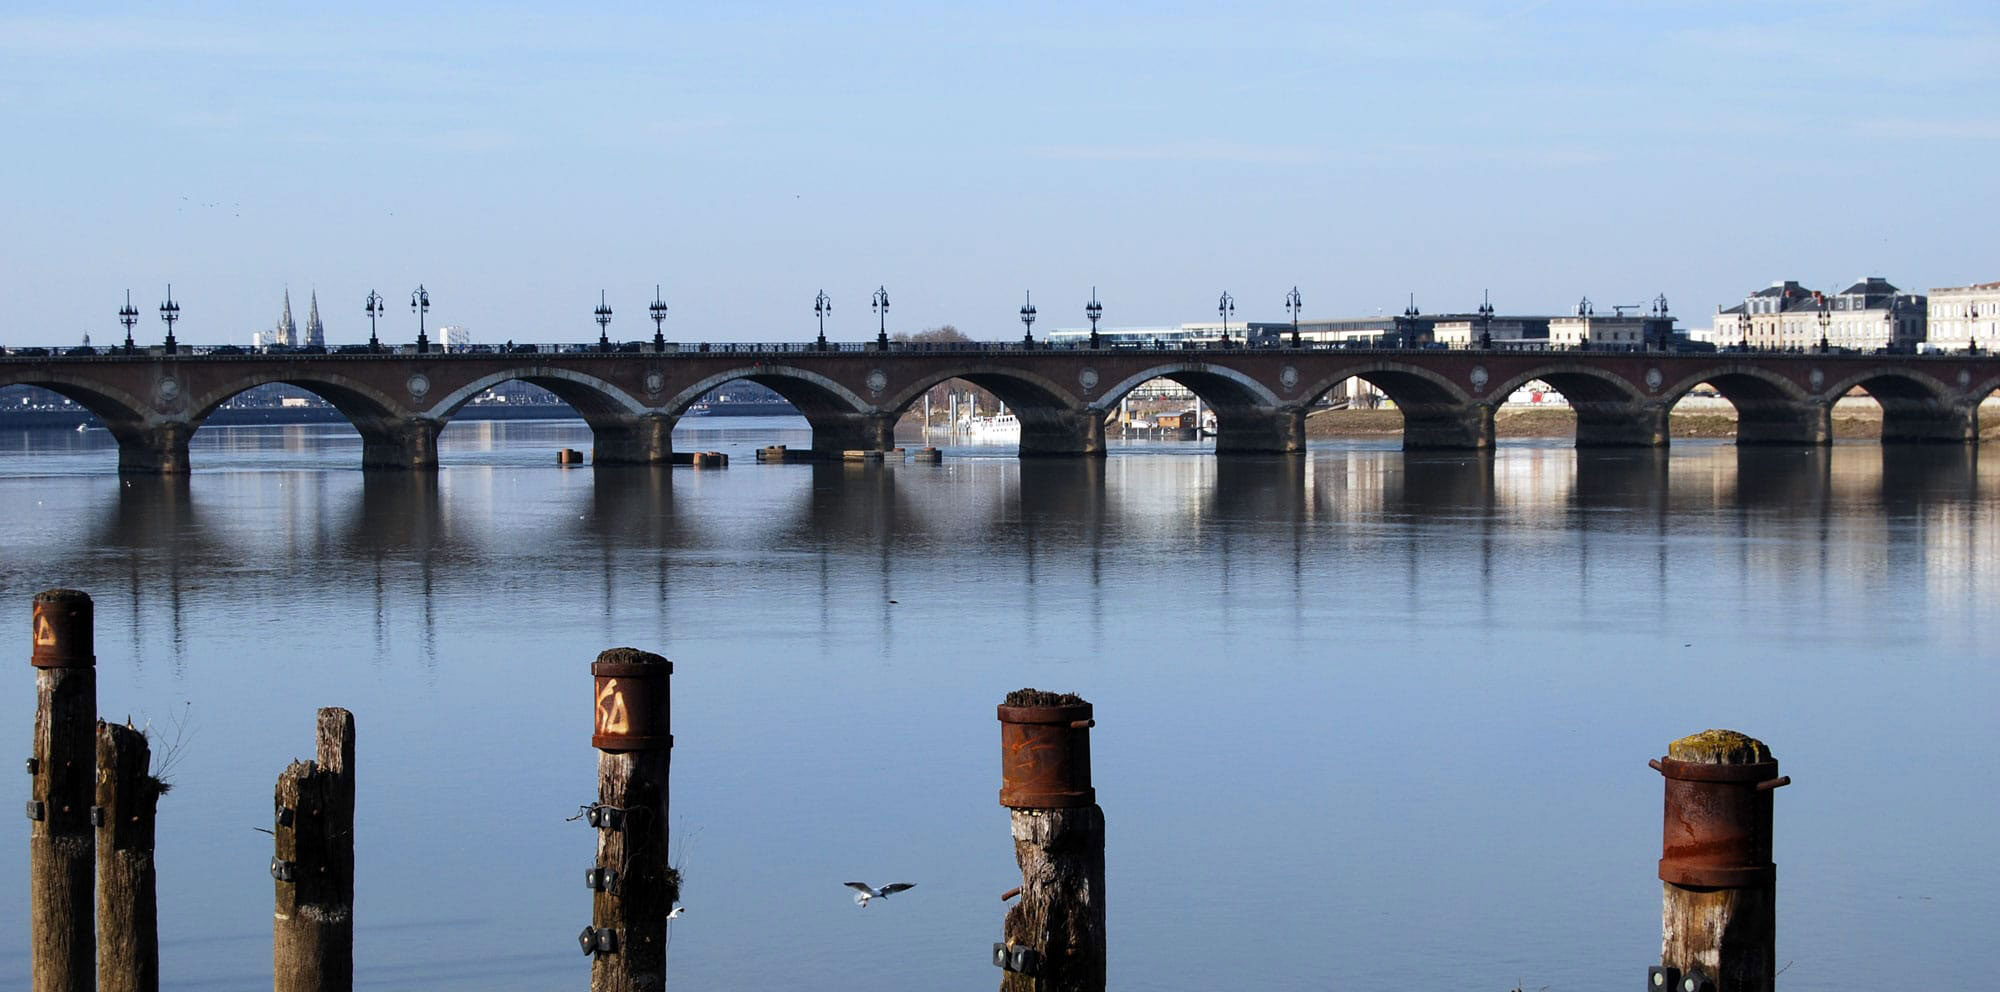 « Le pont de pierre a disparu » : une fiction inédite de Pierre Hurmic, maire de Bordeaux